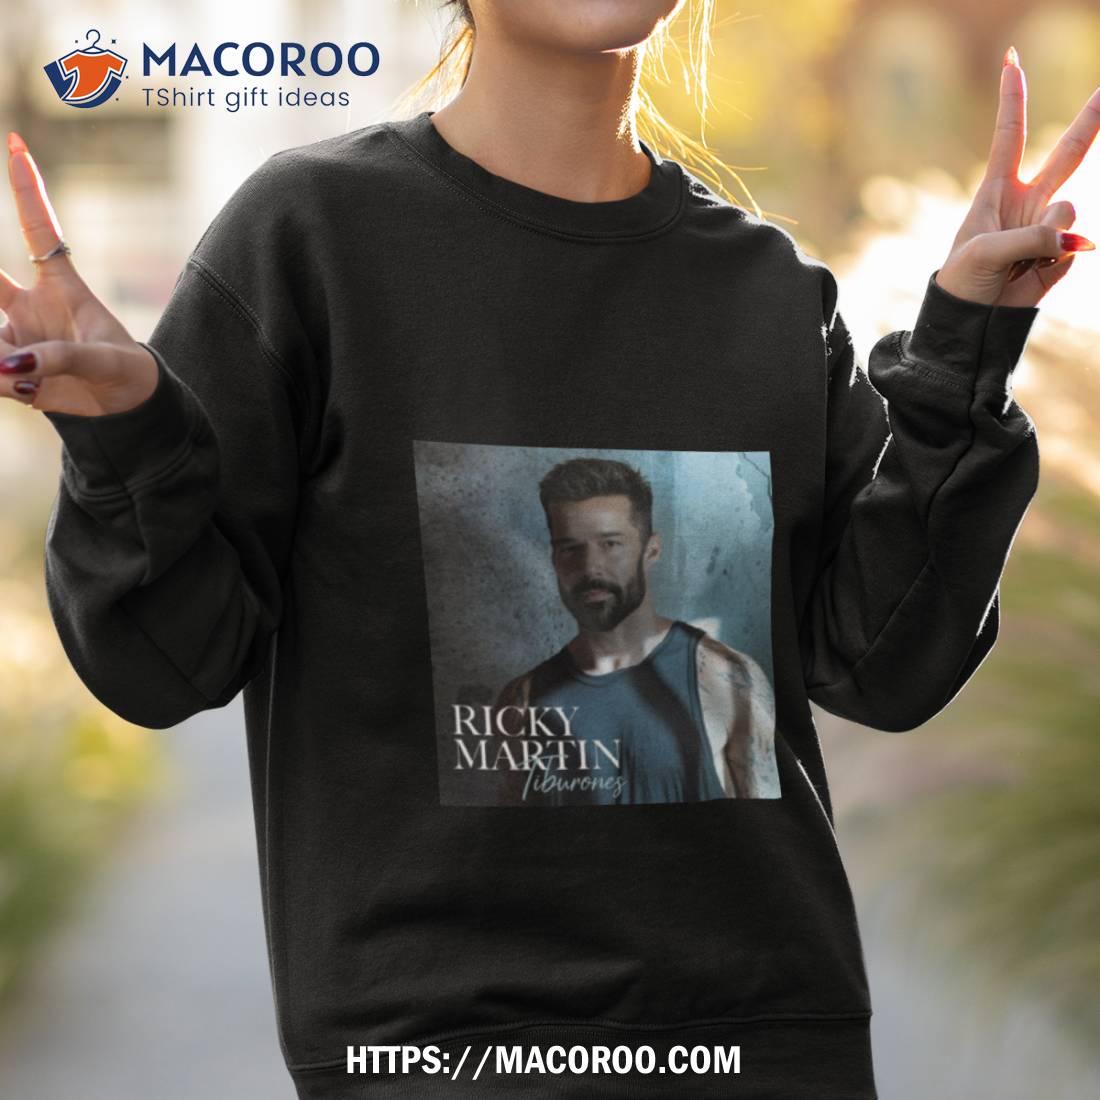 Ricky Martin Tiburones Shirt Sweatshirt 2